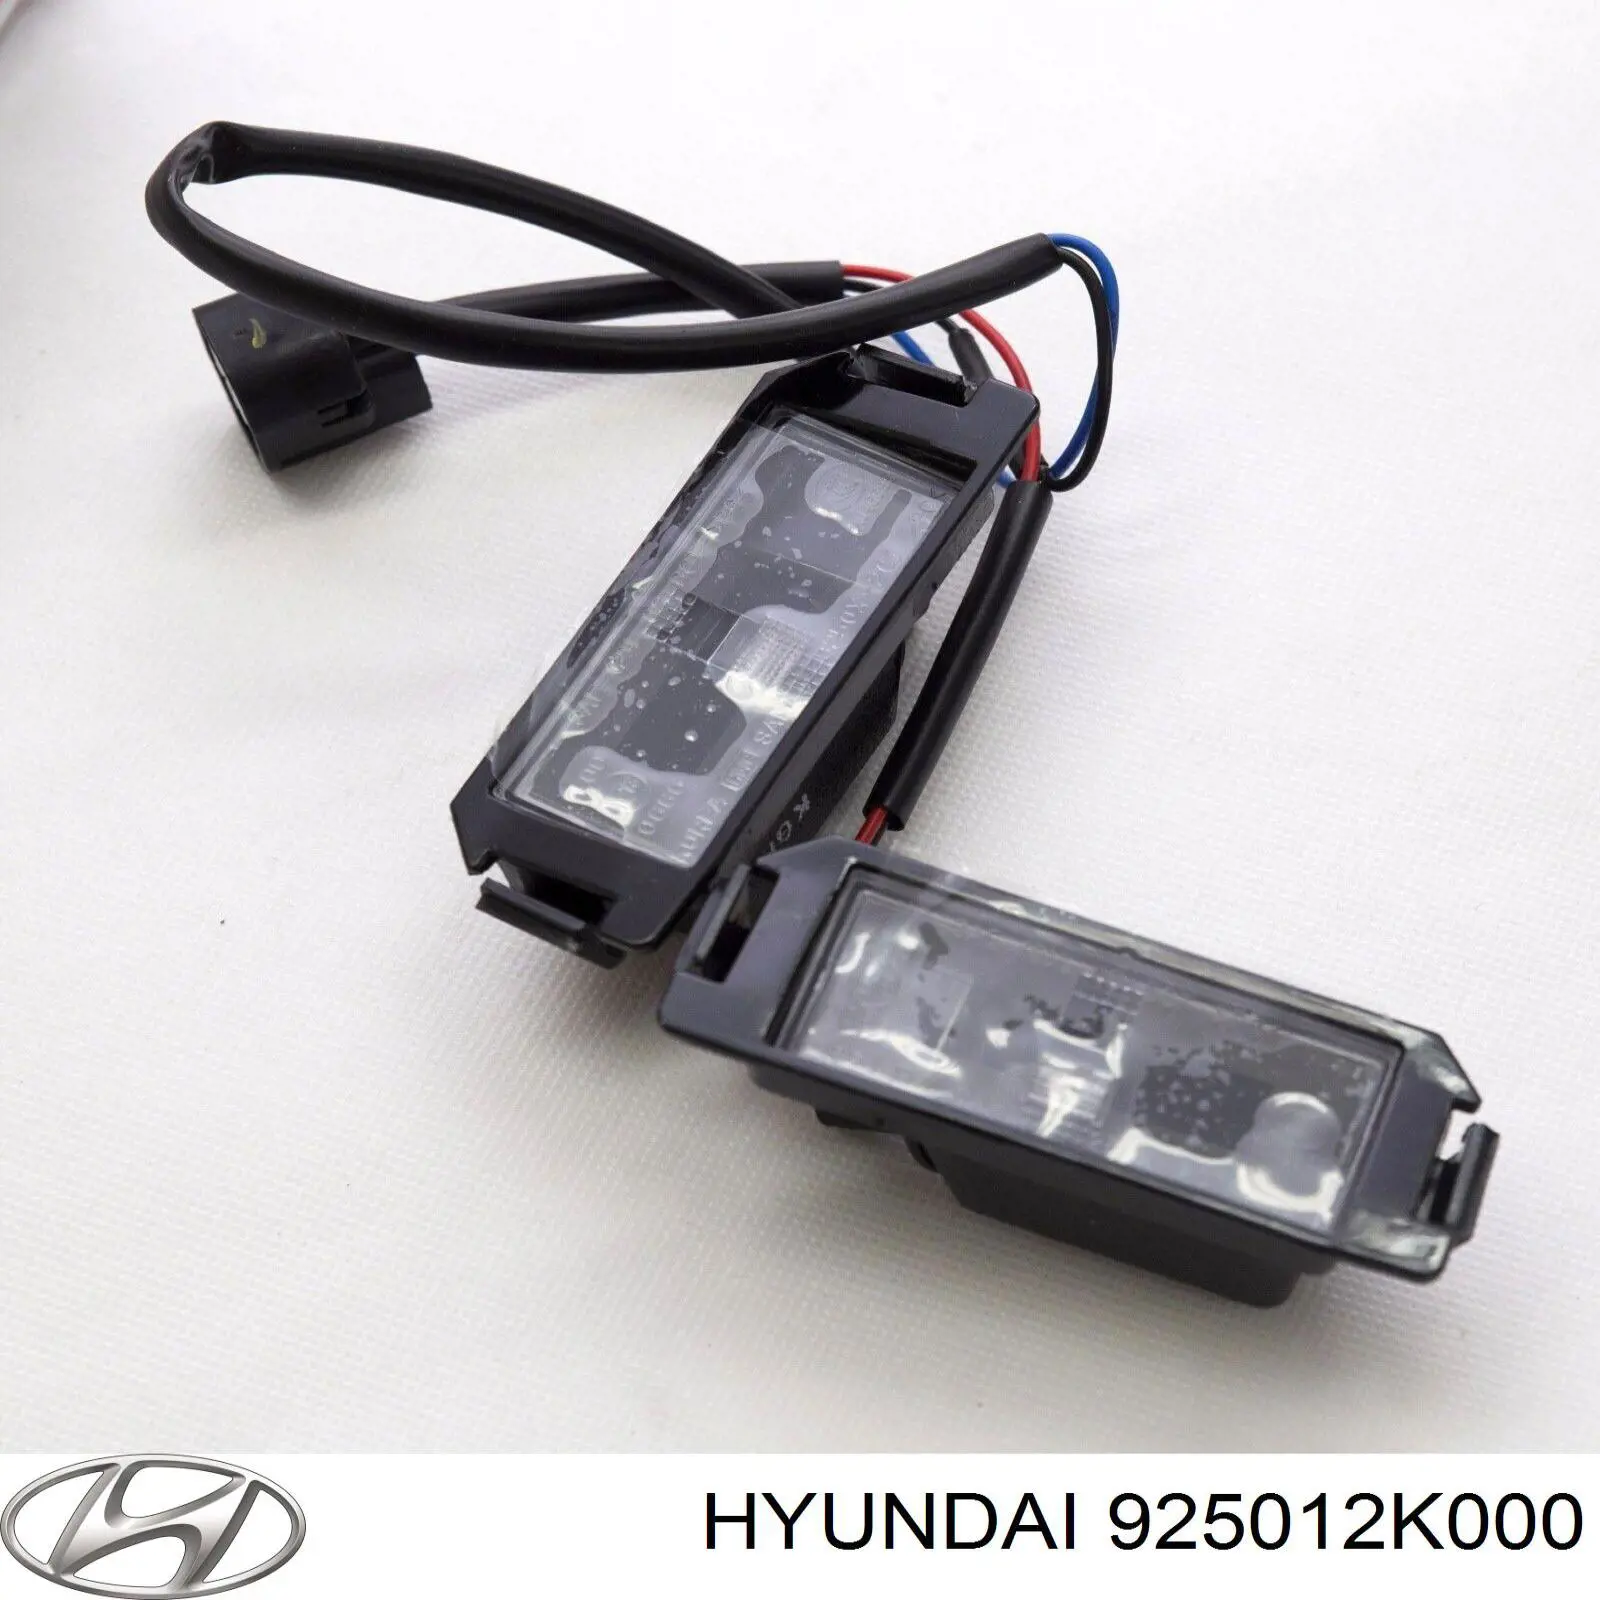 925012K000 Hyundai/Kia lanterna da luz de fundo de matrícula traseira